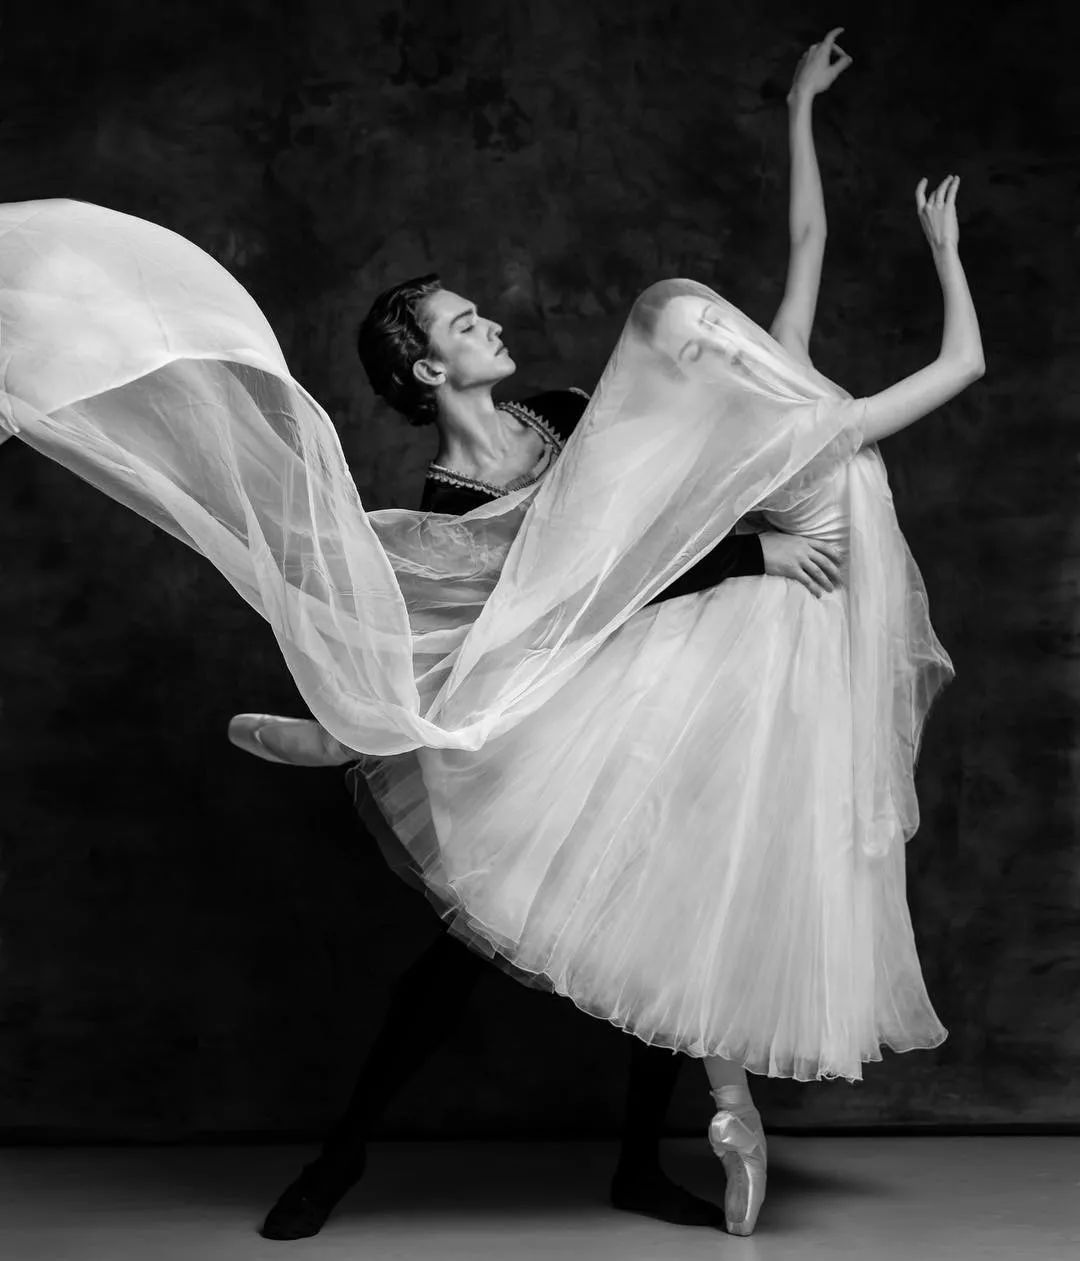 97年外国芭蕾舞少年爆红网络，明明是男人却被赞“美得像天鹅”？